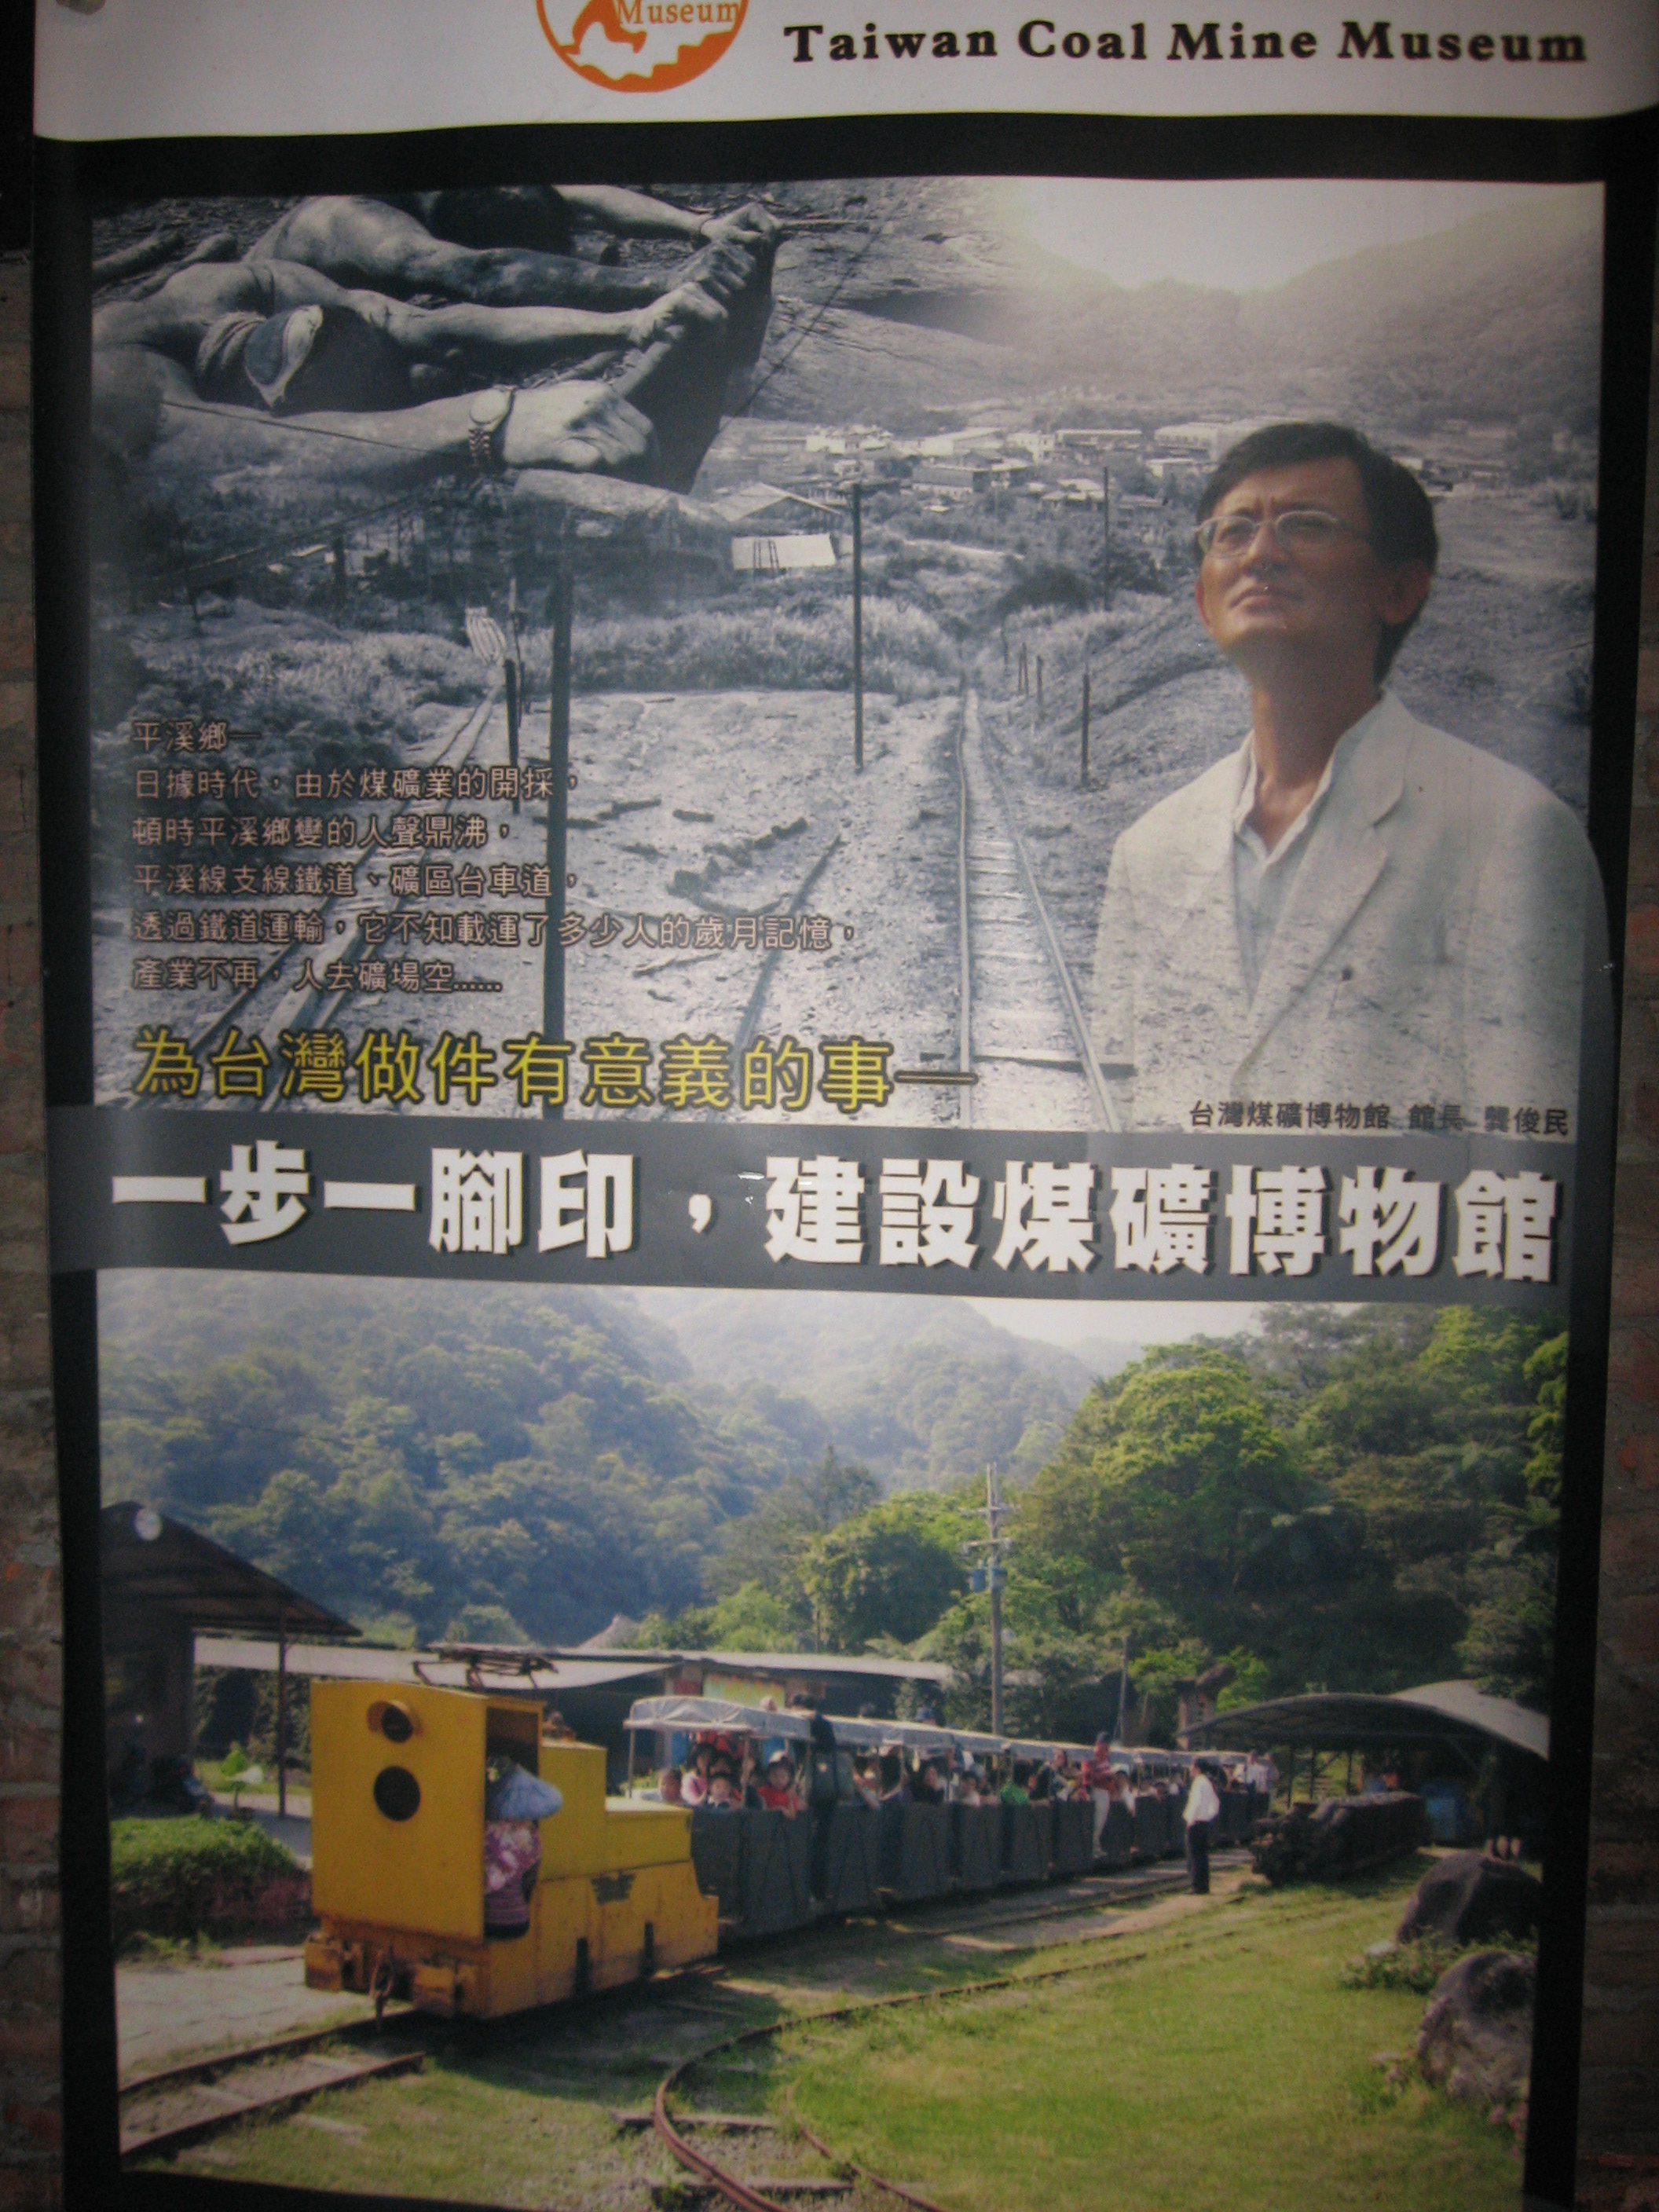 タージーさんの台湾煤鉱博物館へのユーザーアルバム投稿 台湾煤鉱博物館 十分 タイワンメイコワン ボウウーグアン の口コミ Q A 台湾観光 台北ナビ